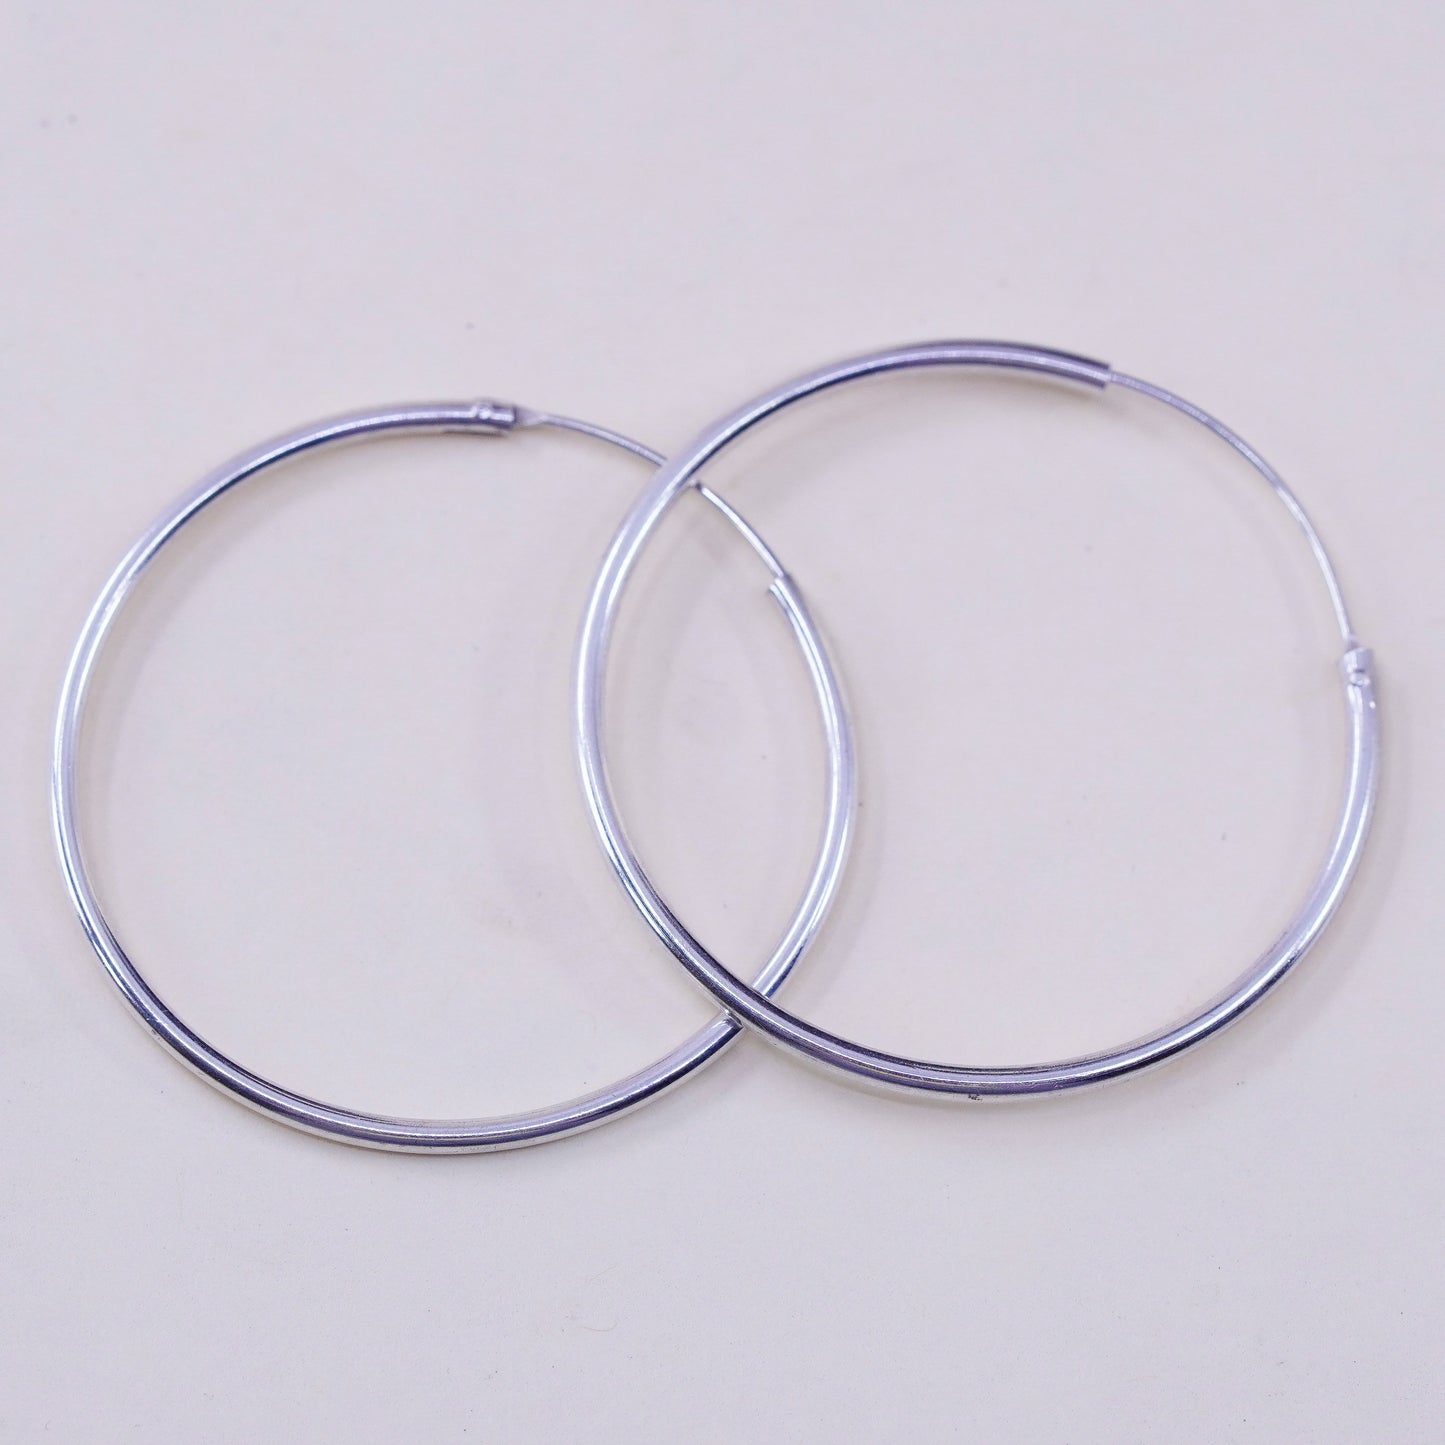 1.5” Vintage sterling 925 silver loop earrings, minimalist primitive hoops